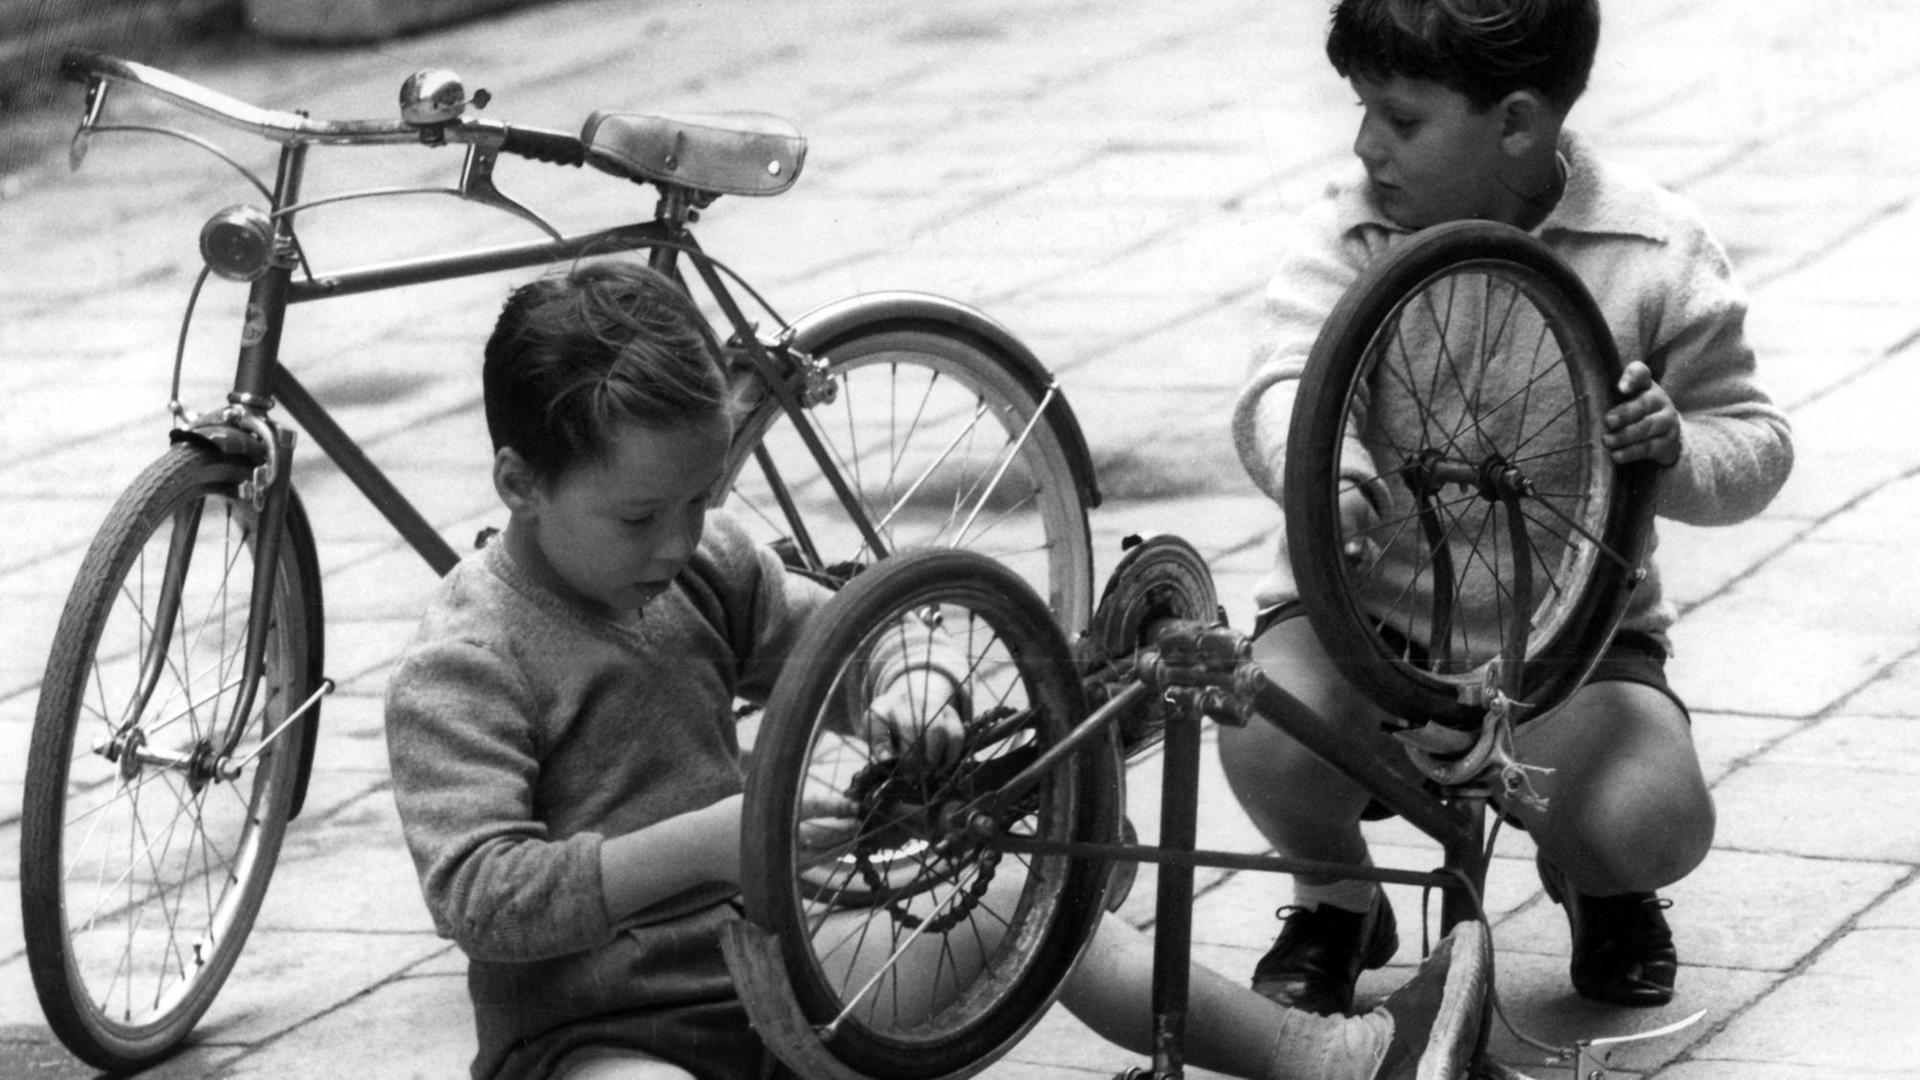 Zwei Kinder in Venedig brauchen nicht bei jeder Kleinigkeit in ein Fachgeschäft zu gehen. Sie reparieren kleinere Macken an ihren Drahteseln einfach selbst. Aufnahme vom 27.09.1960